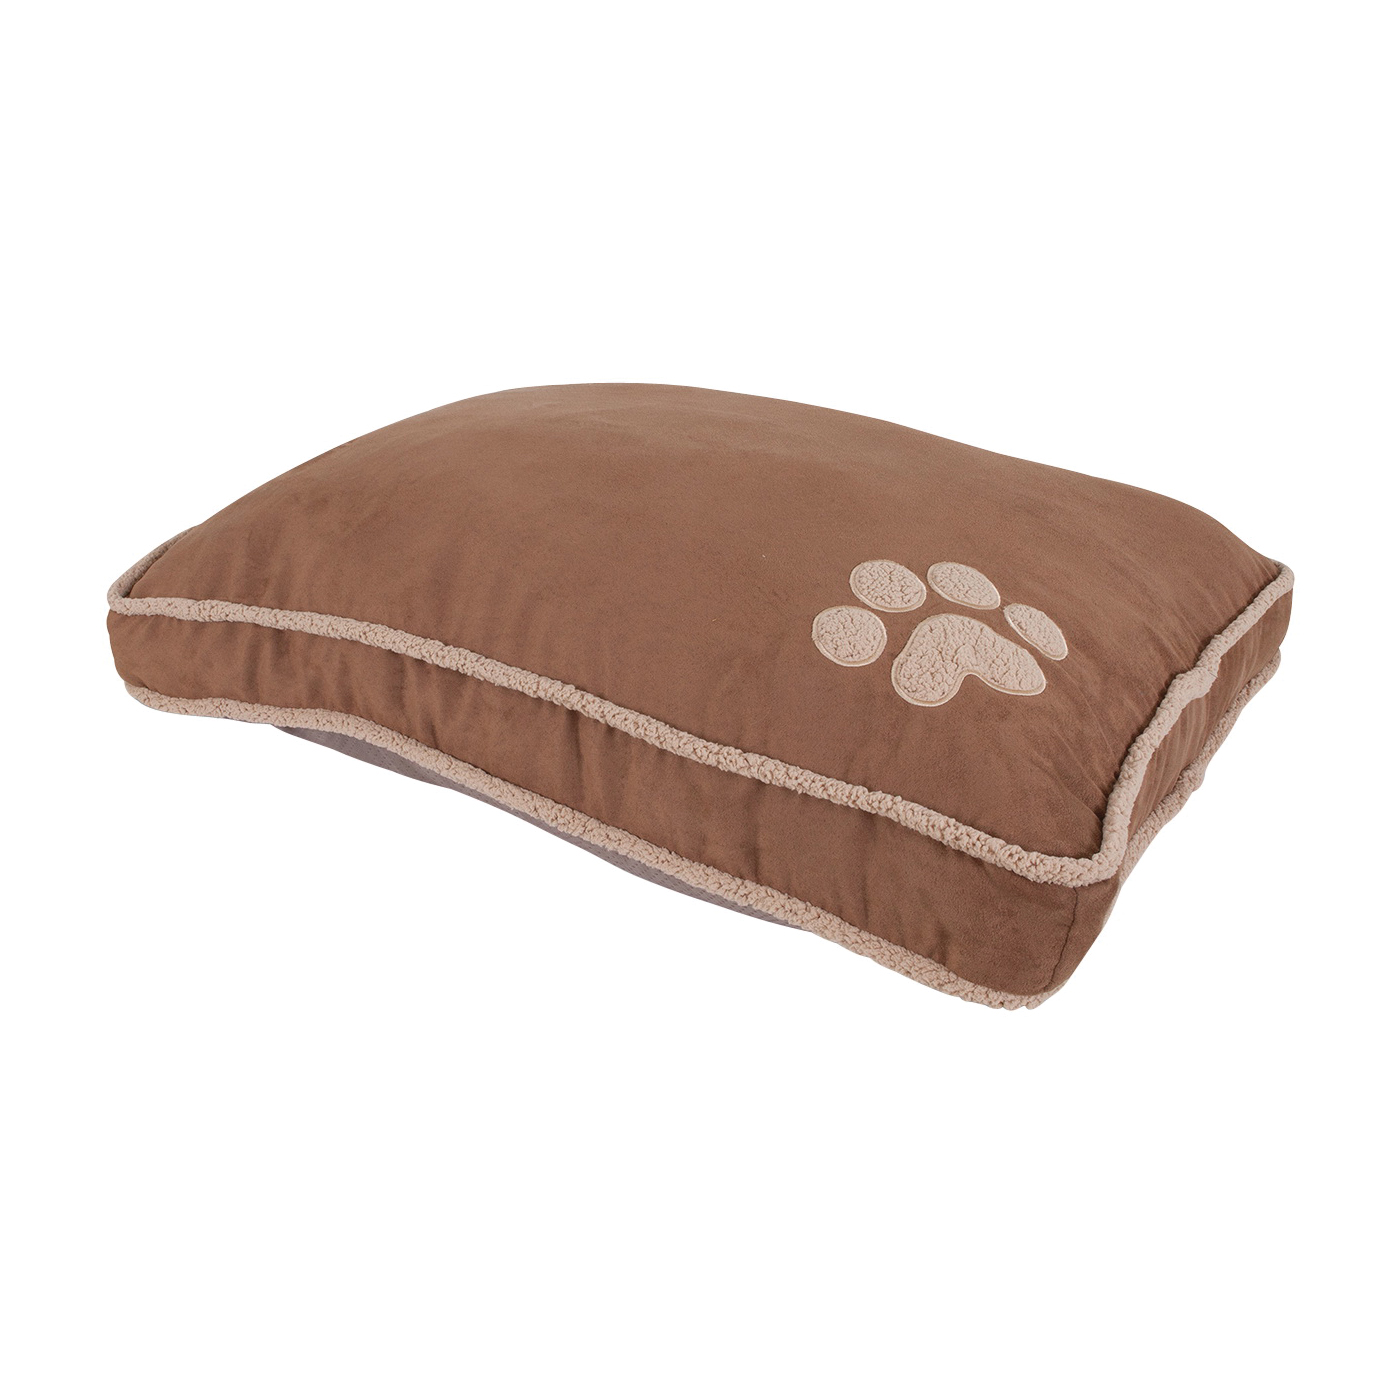 80393 Pillow Pet Bed, 36 in L, 45 in W, Paw Print Pattern, Polyfill Fill, Dark Tan